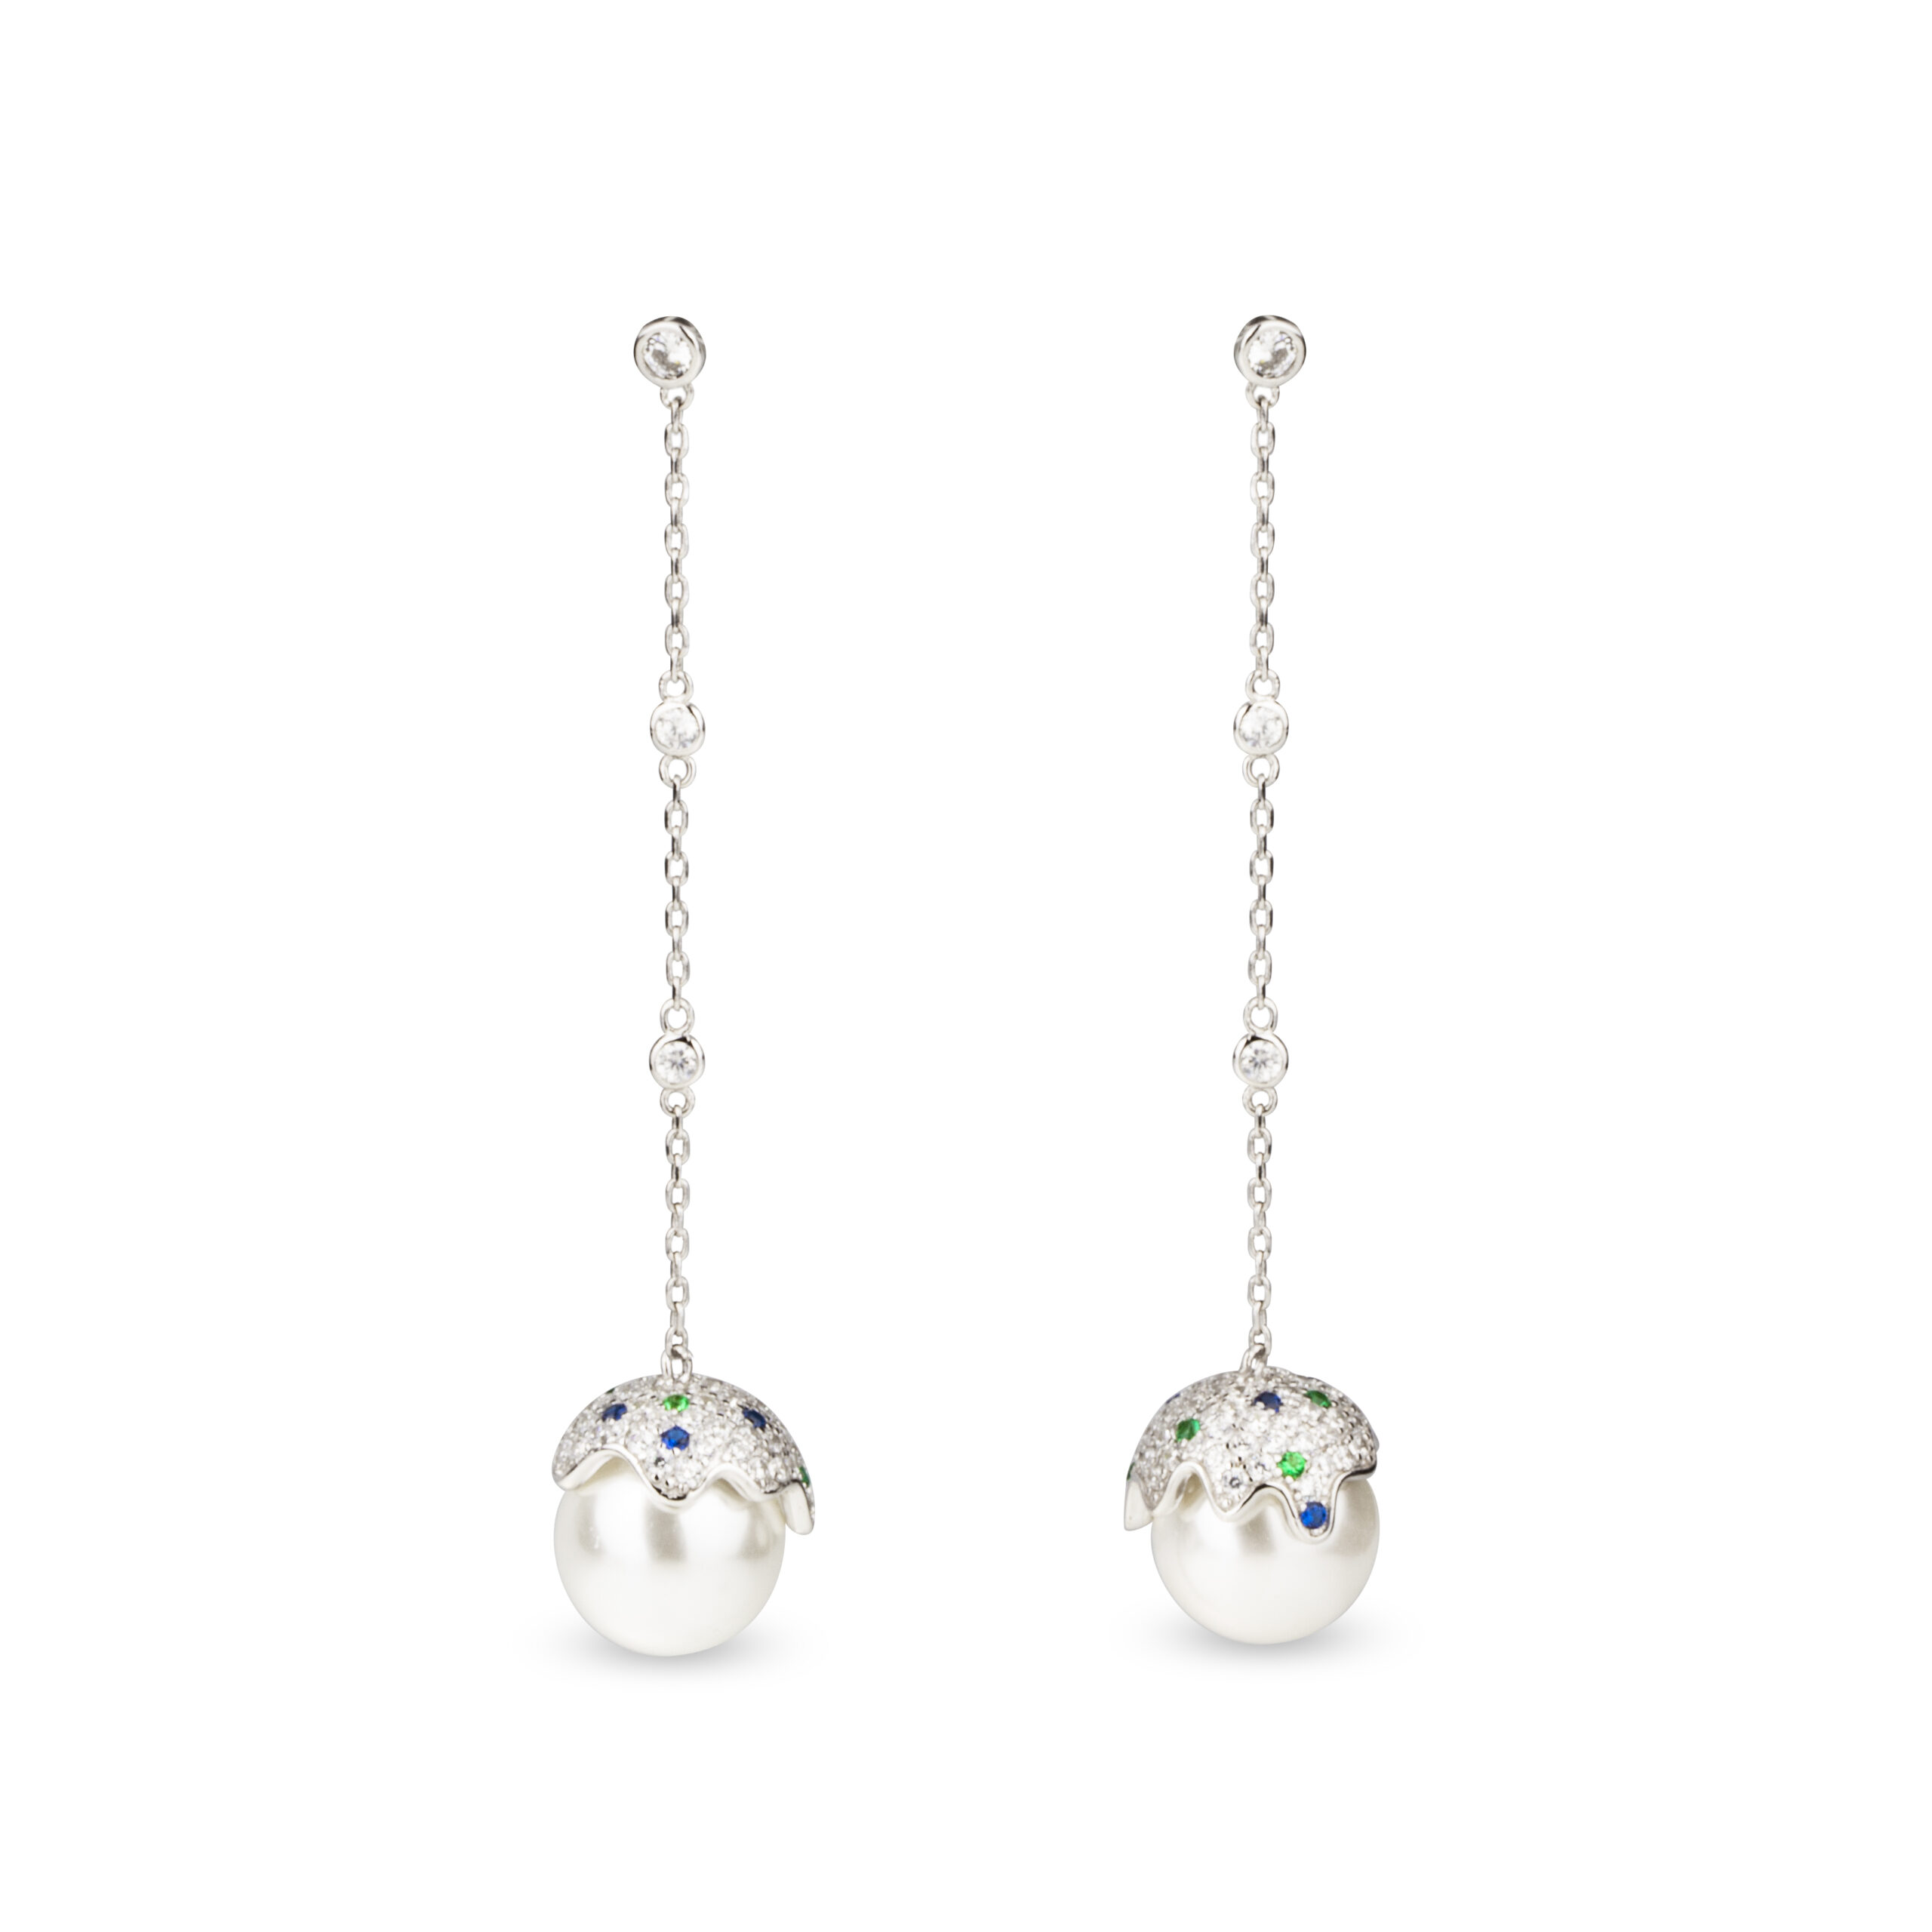 Luxusní náušnice s nádhernou přírodní perlou na závěsu elegantně doplňují diamanty, safíry a smaragdy s briliantovým brusem.